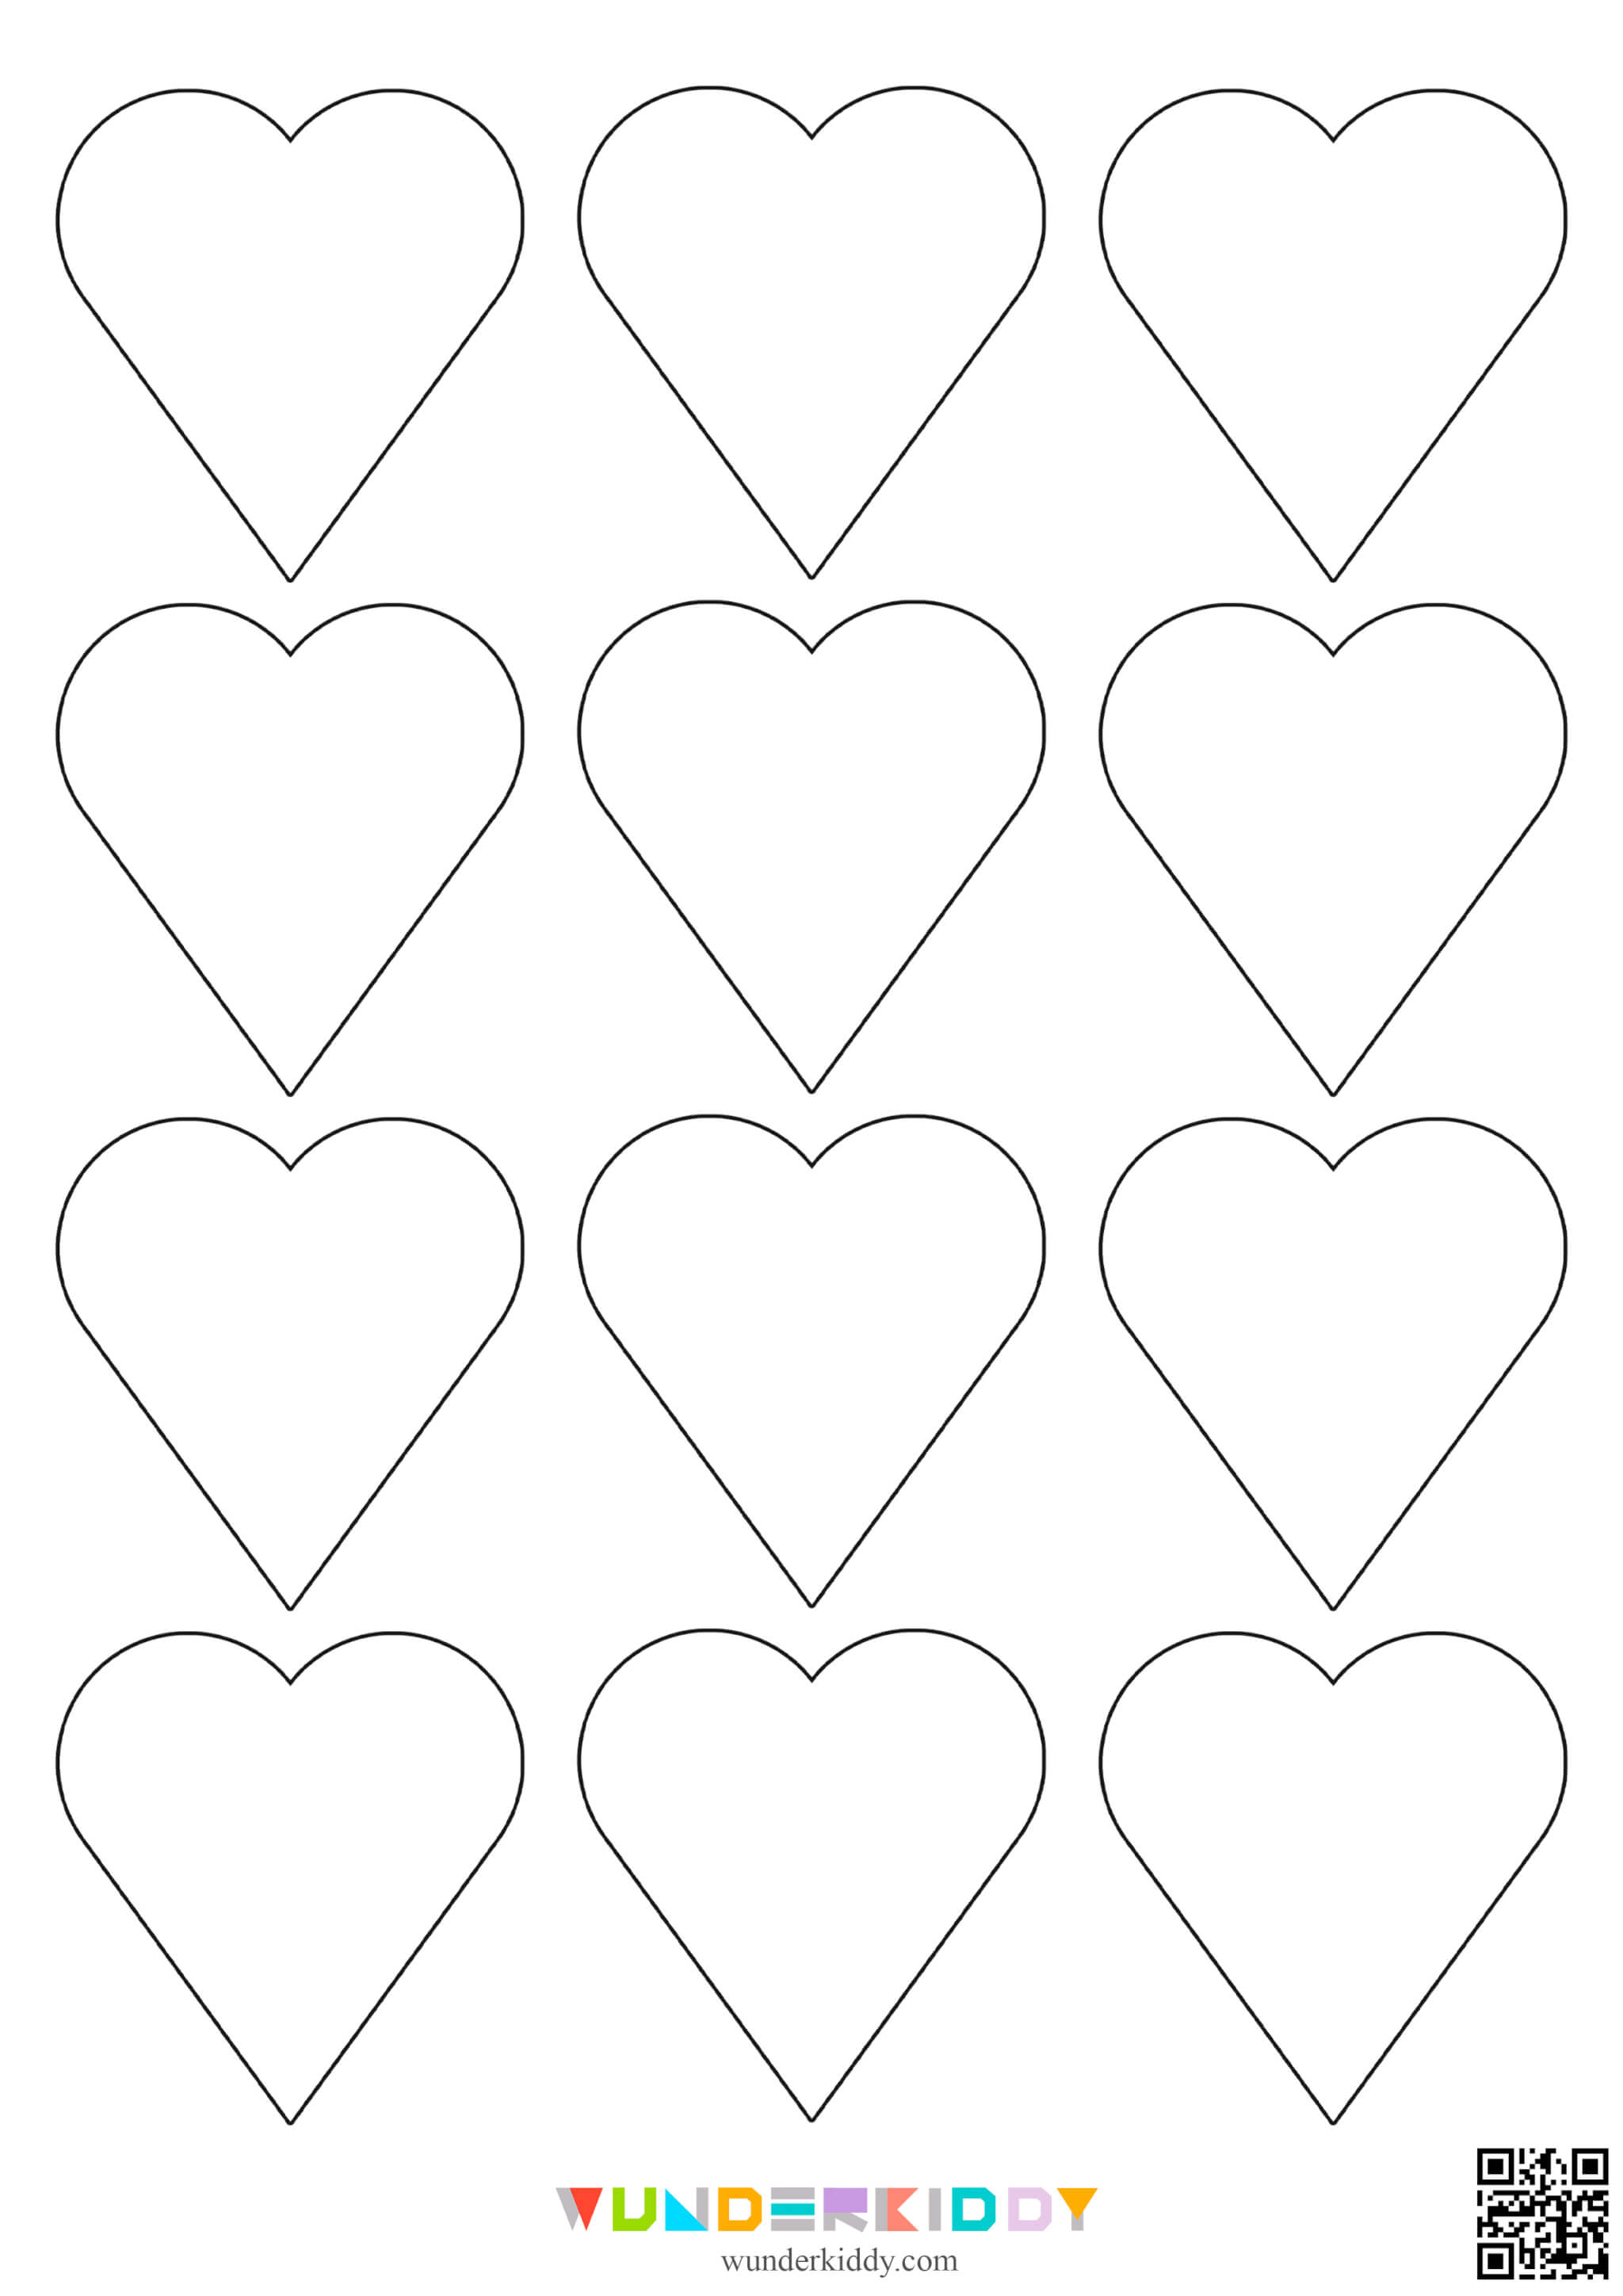 Контури та шаблони «Сердечка» для вирізання - Зображення 8